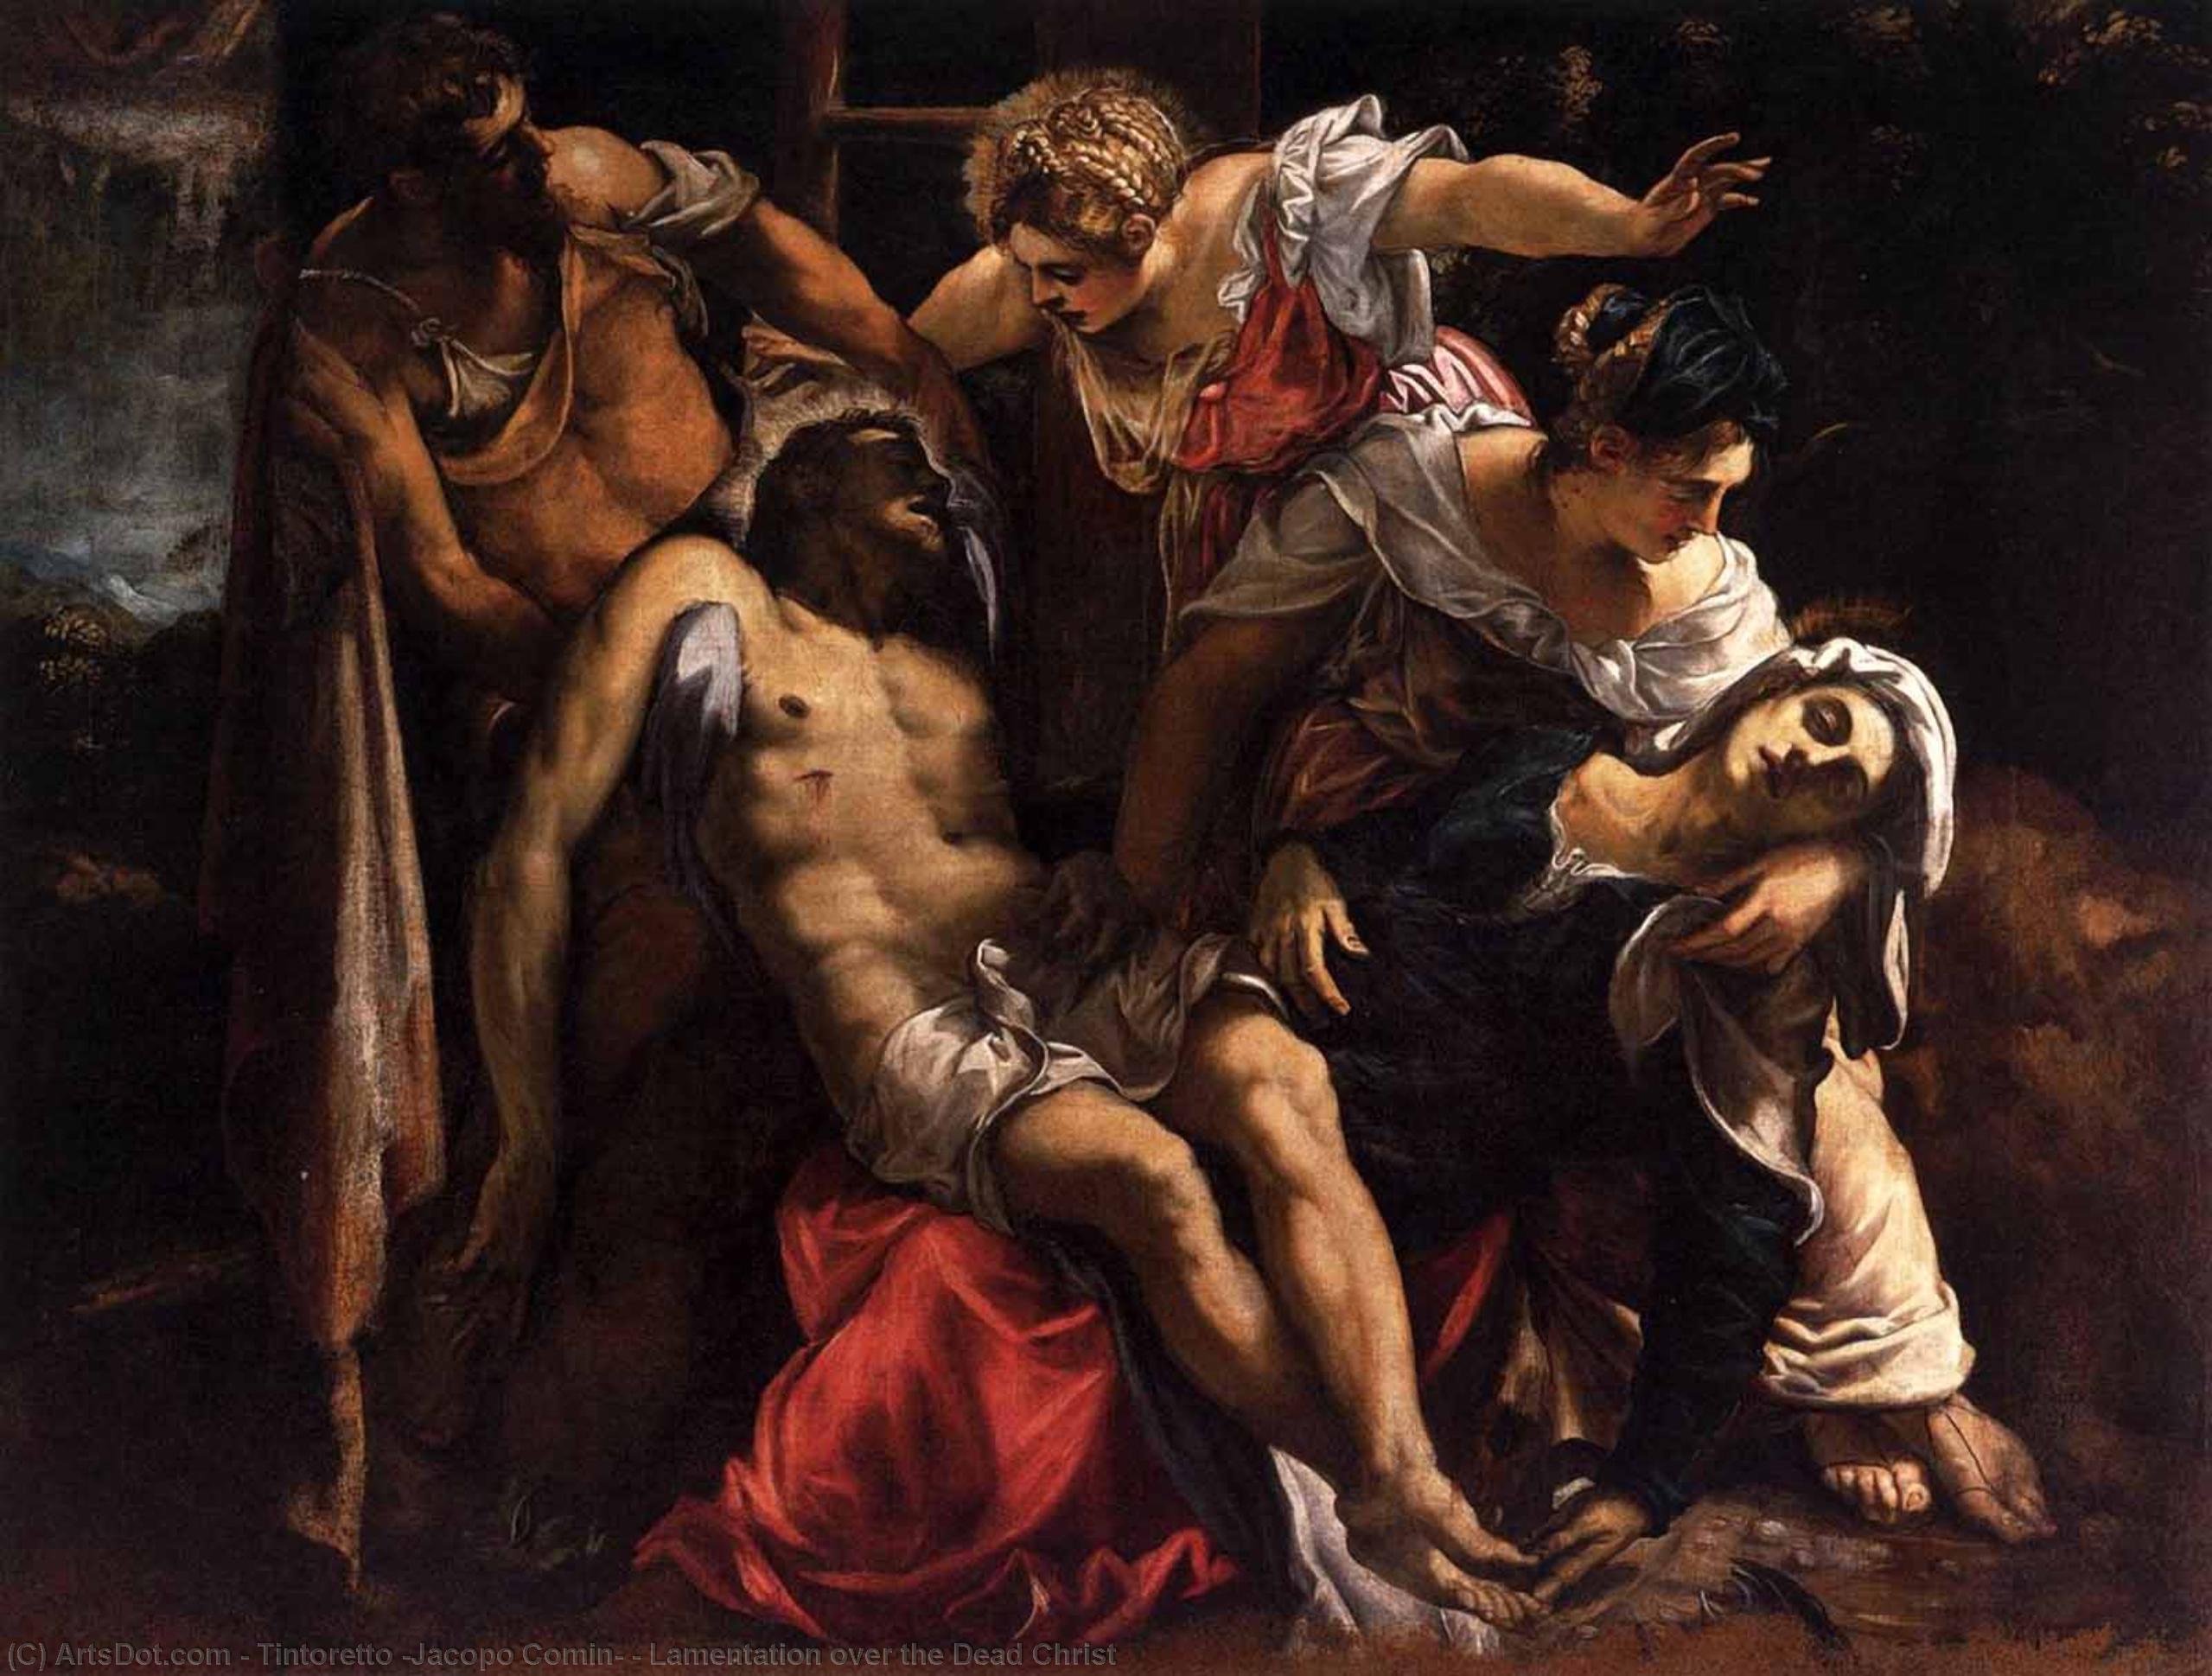 Achat Réplique De Peinture Lamentation sur le Christ mort, 1560 de Tintoretto (Jacopo Comin) (1518-1594, Italy) | ArtsDot.com